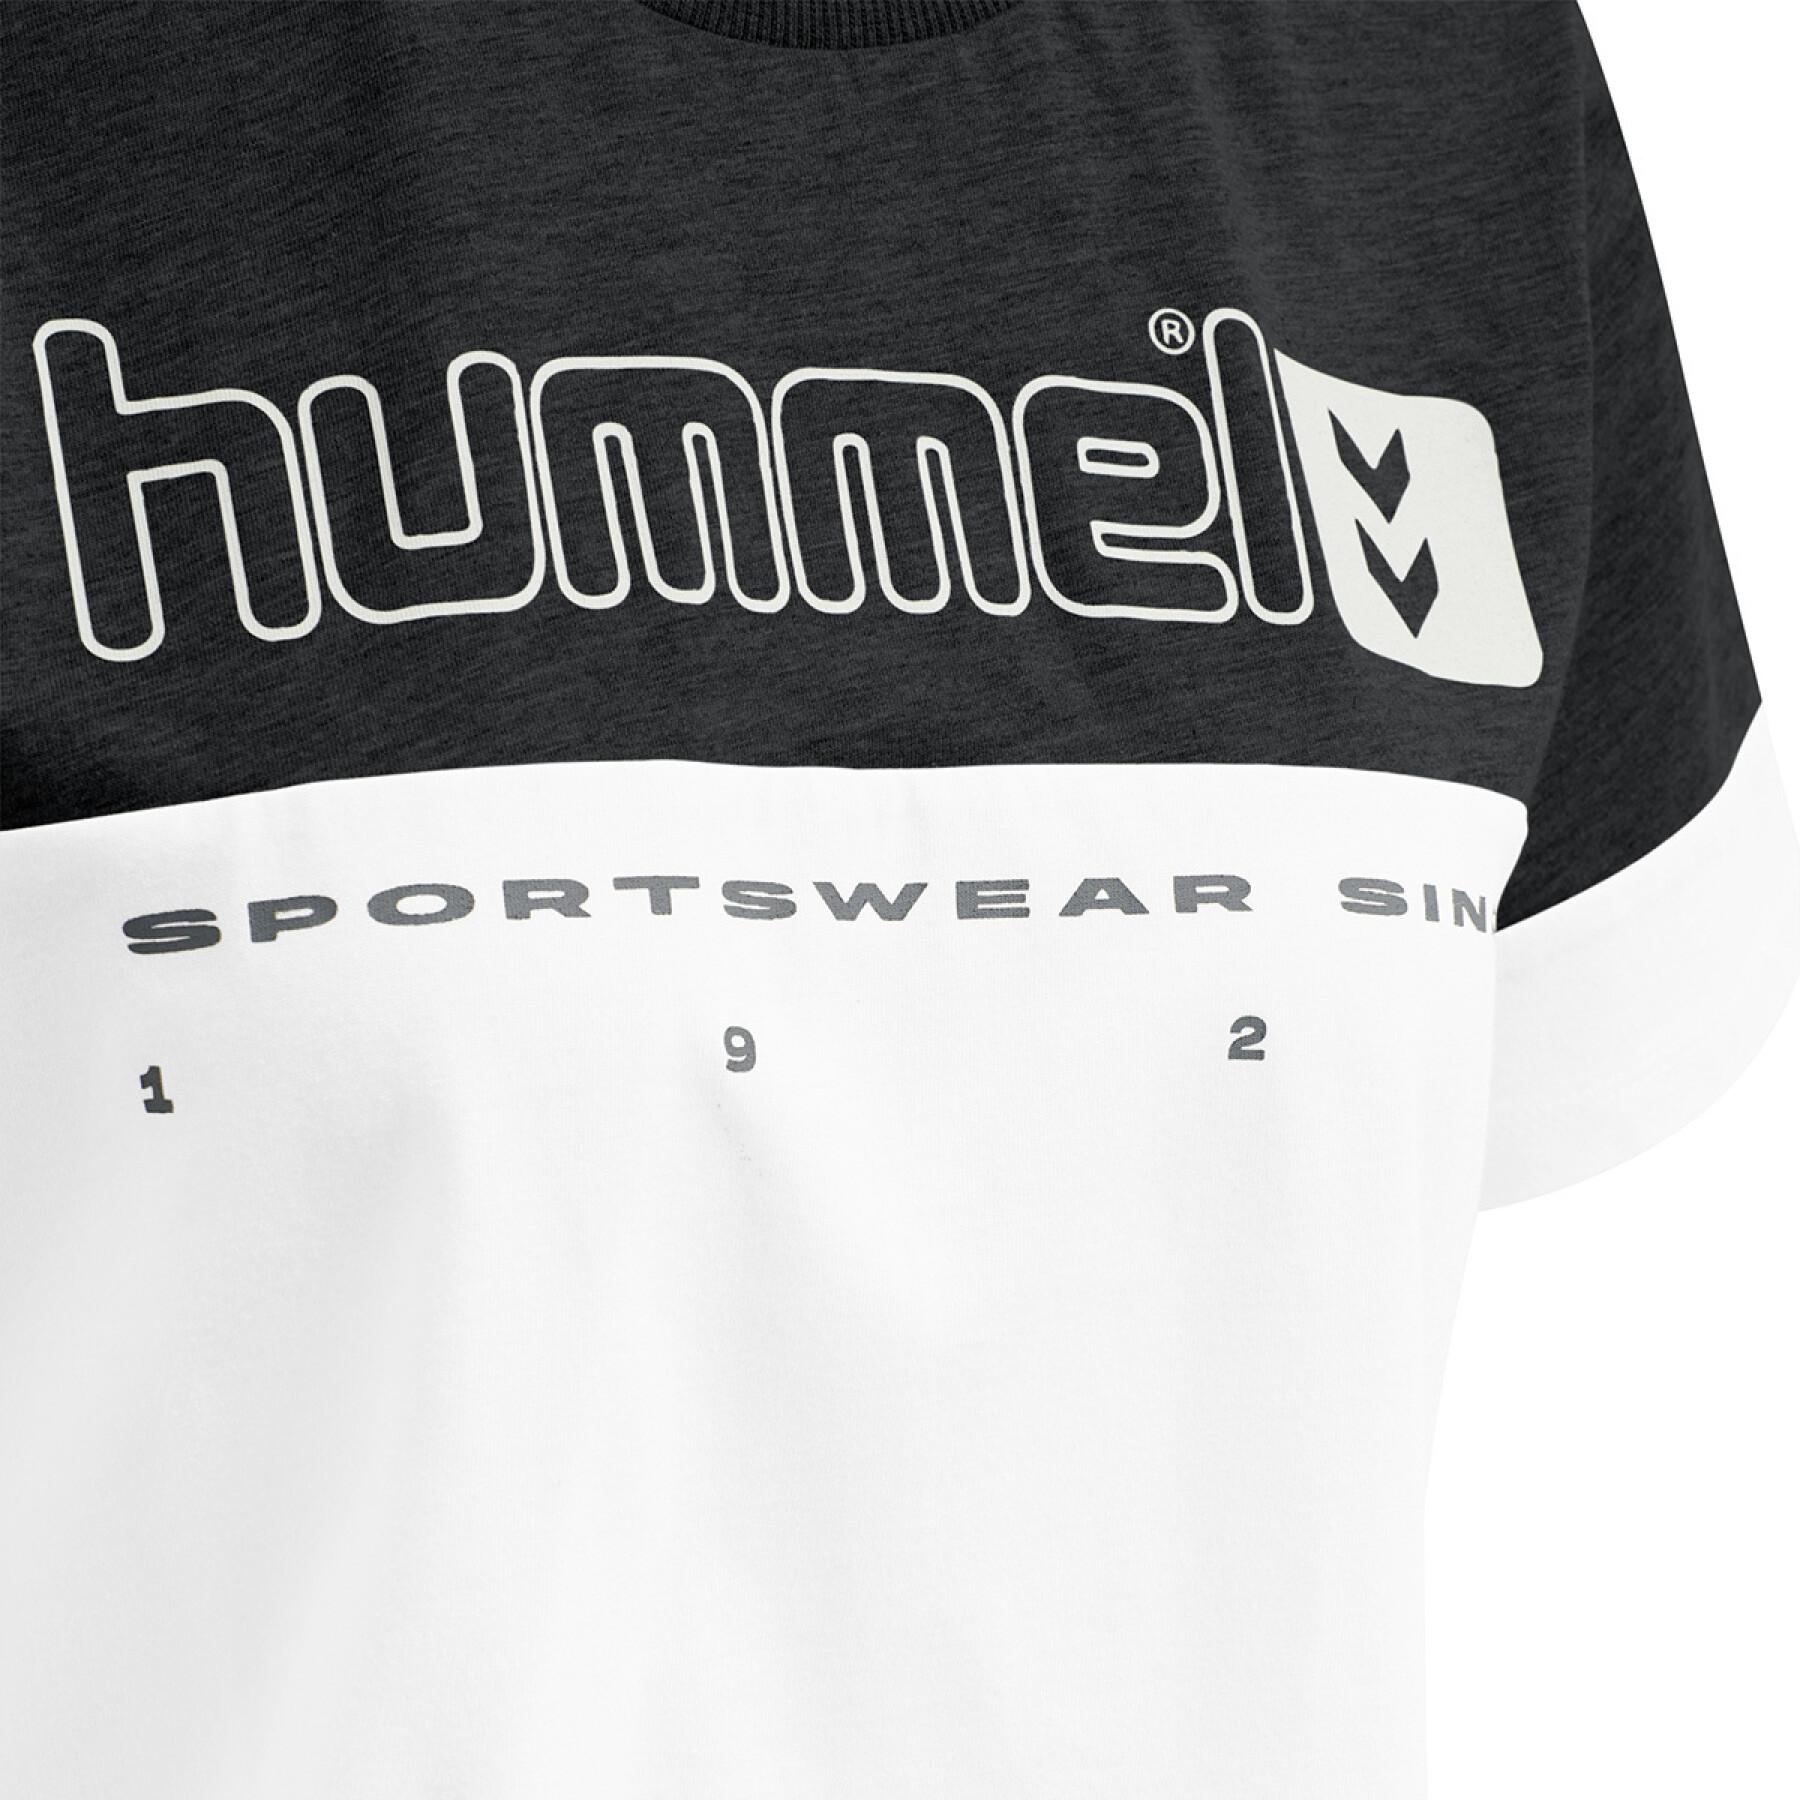 T-shirt för kvinnor Hummel hmlLGC siw